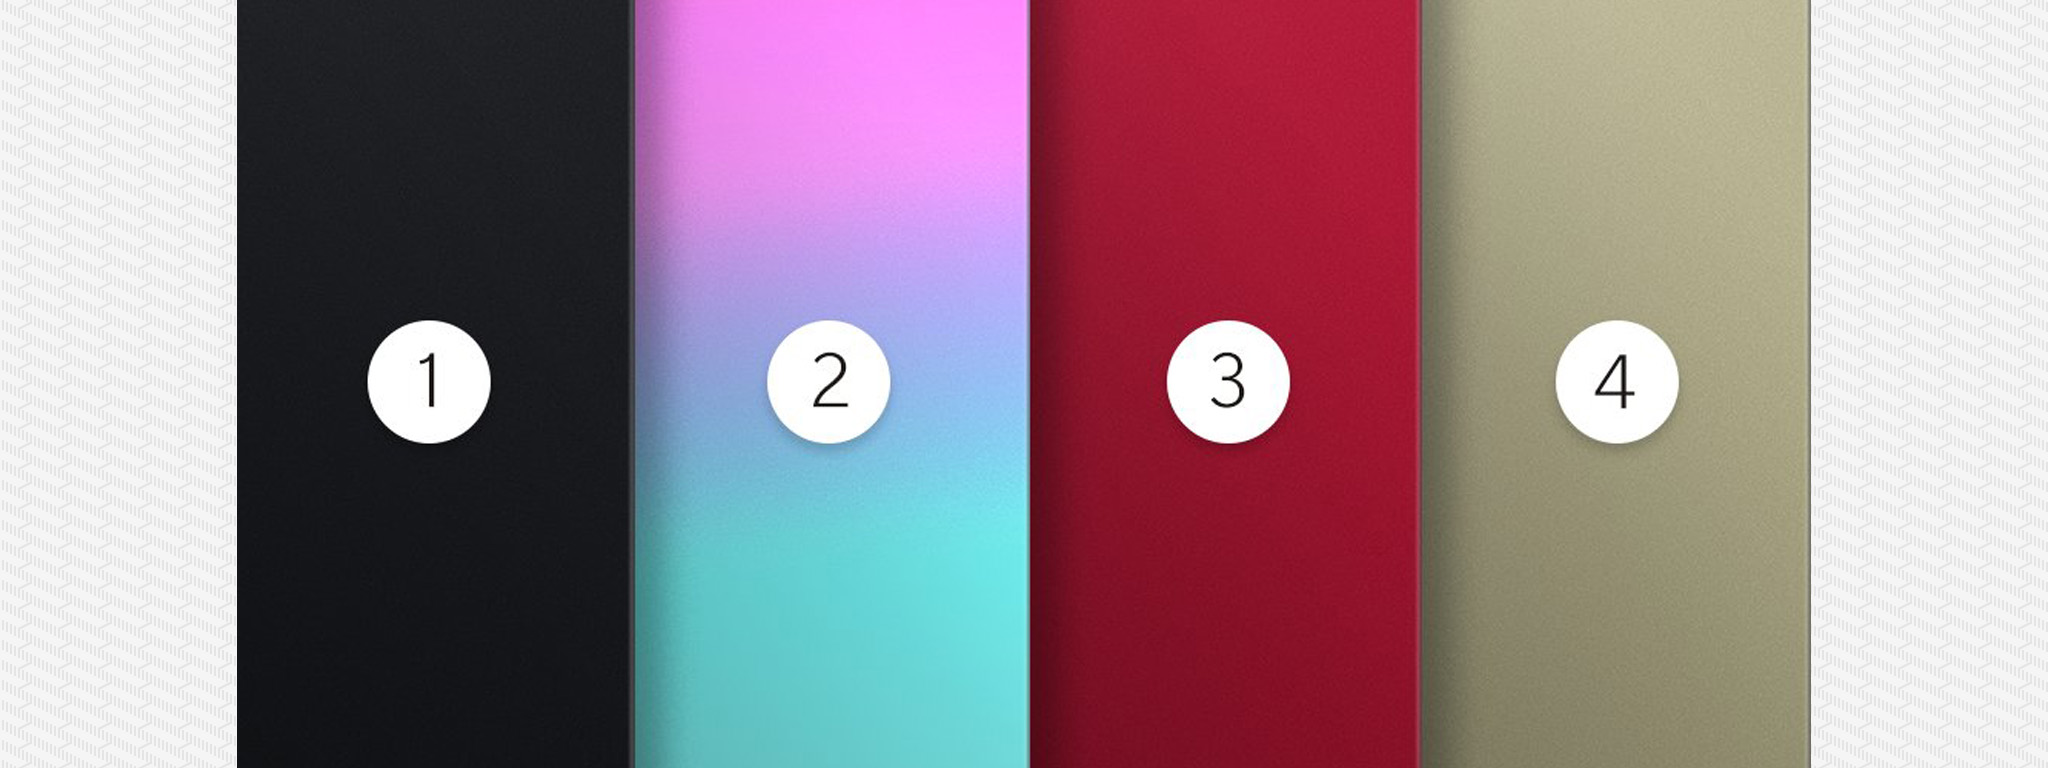 [Teaser] OnePlus 5 có thể sẽ có 4 màu mới, màu số 2 là màu gì anh em?